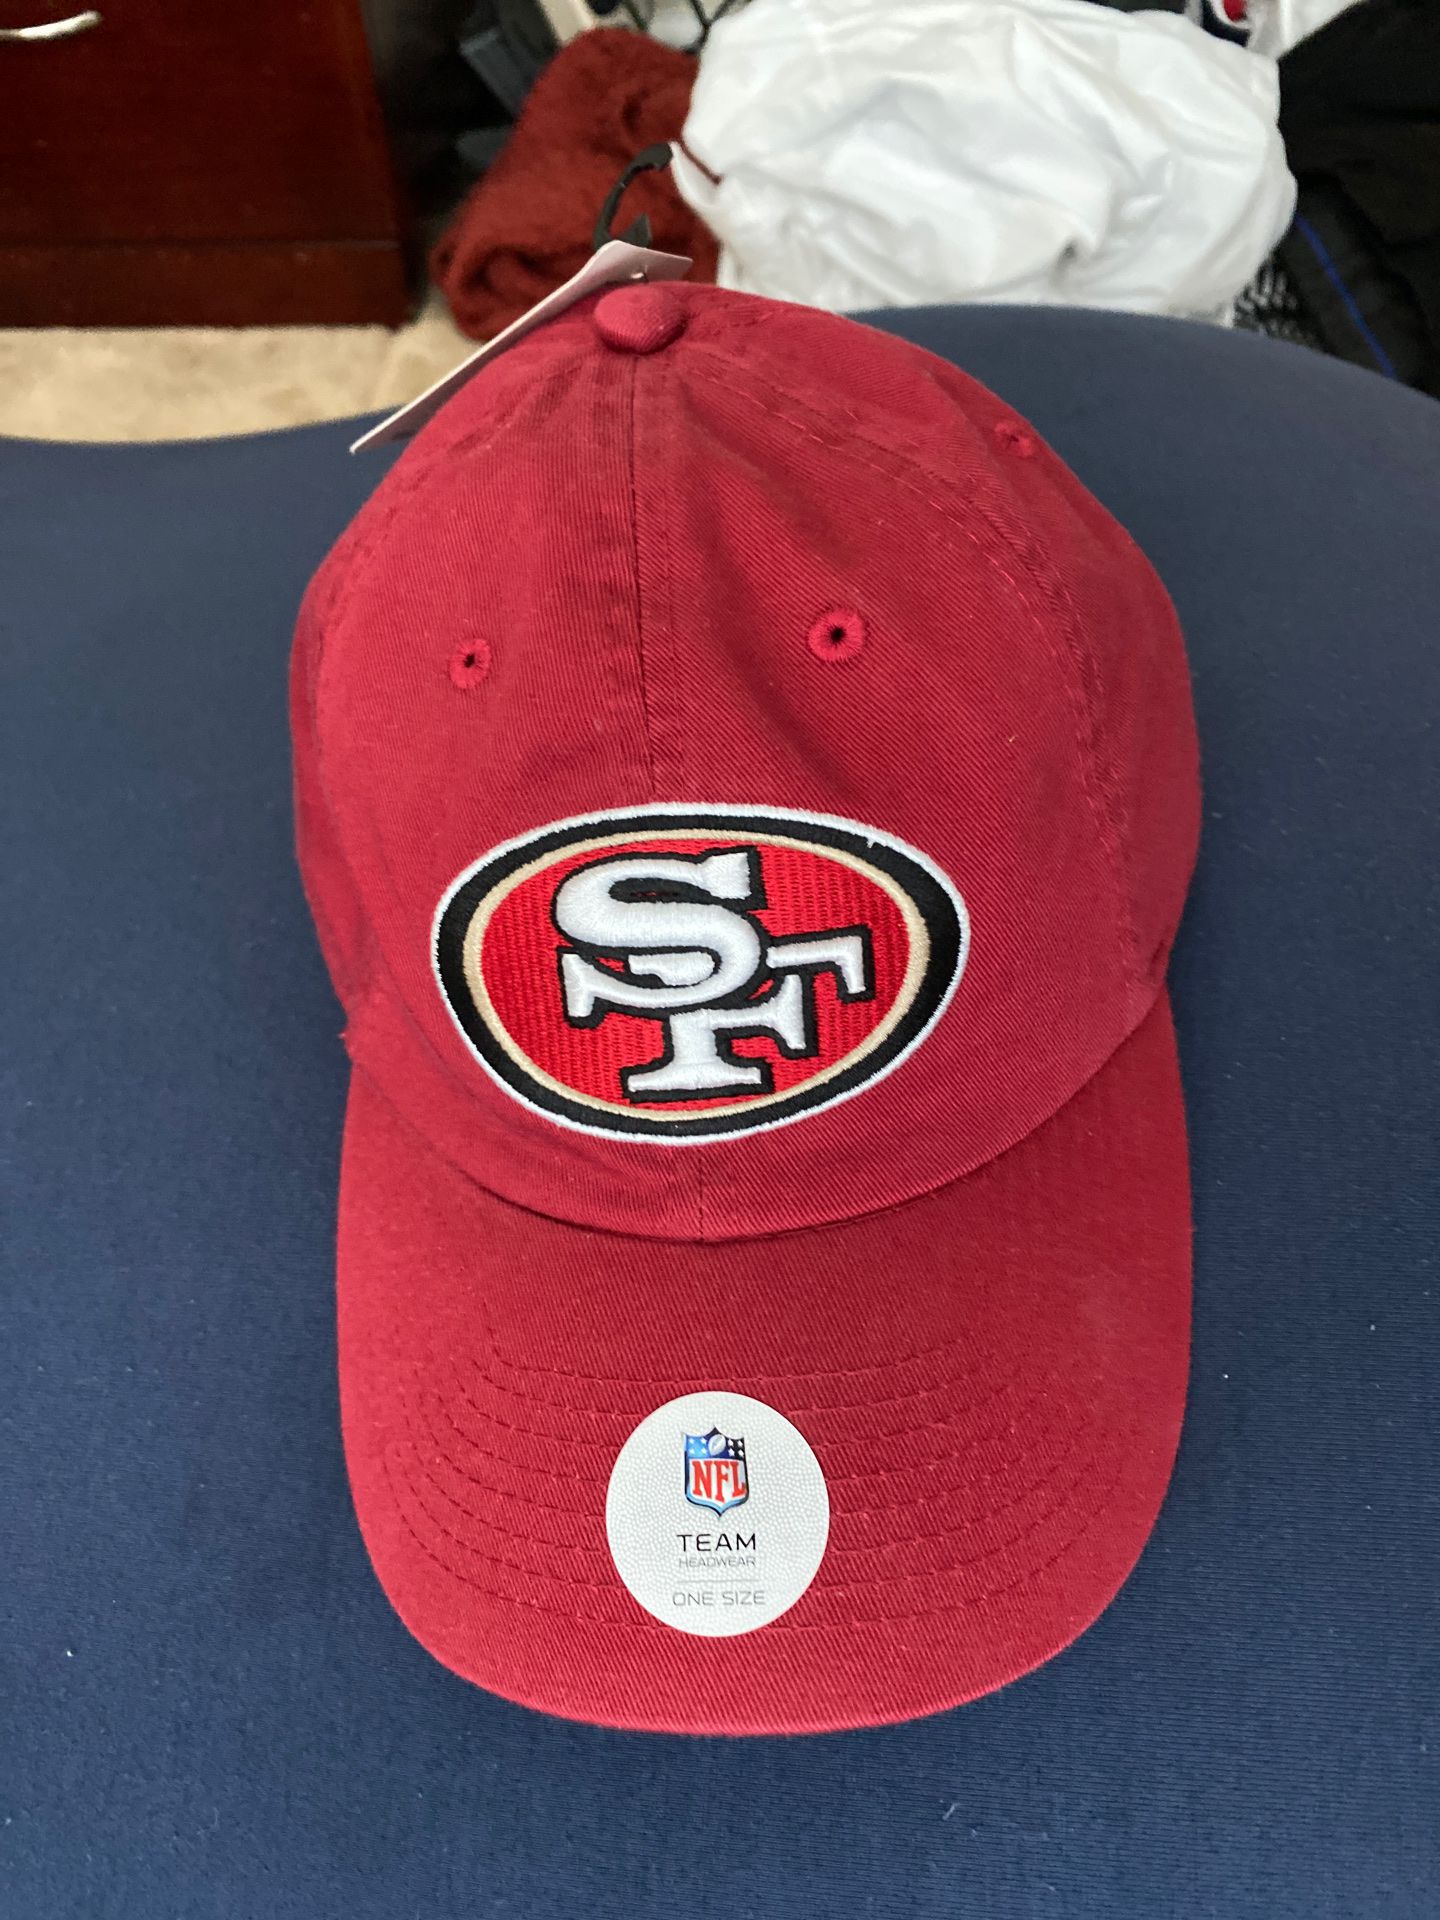 49ers cap or hat